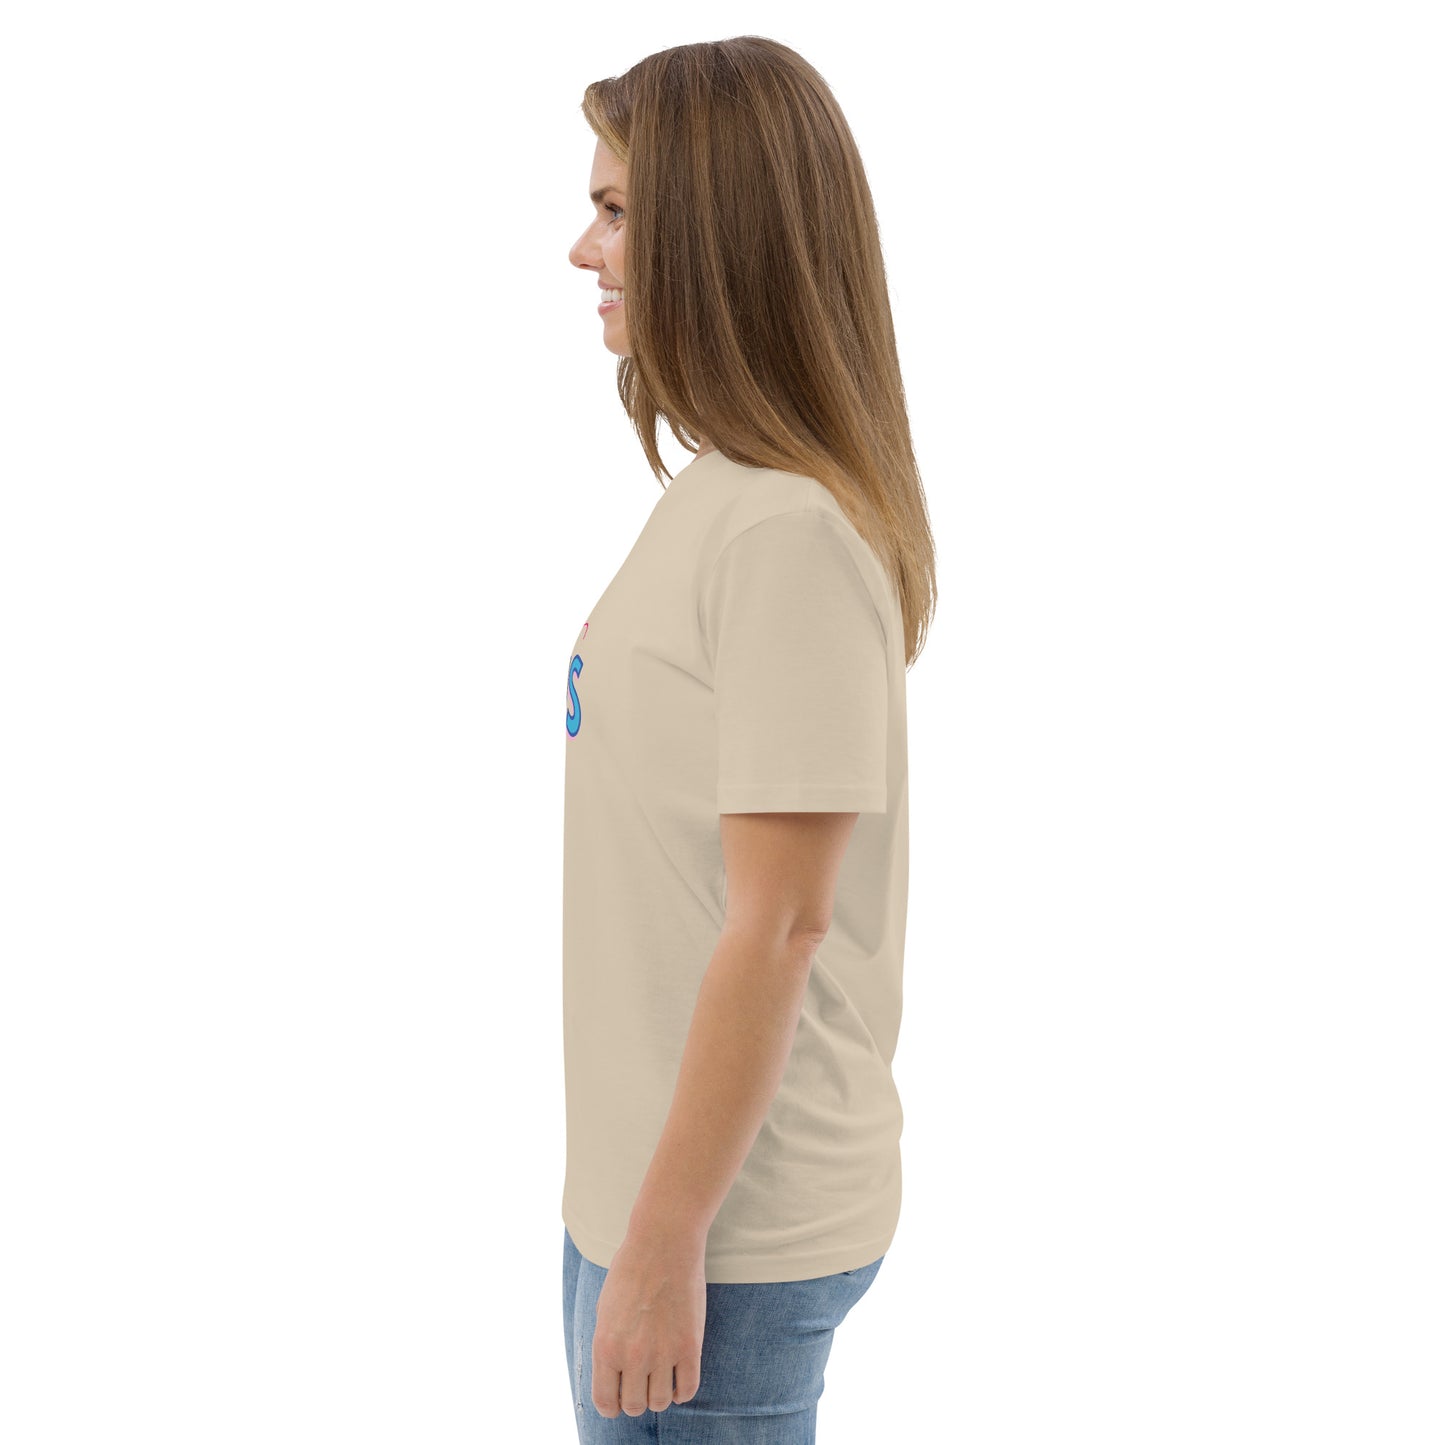 Dont lose focus, Unisex organic cotton t-shirt